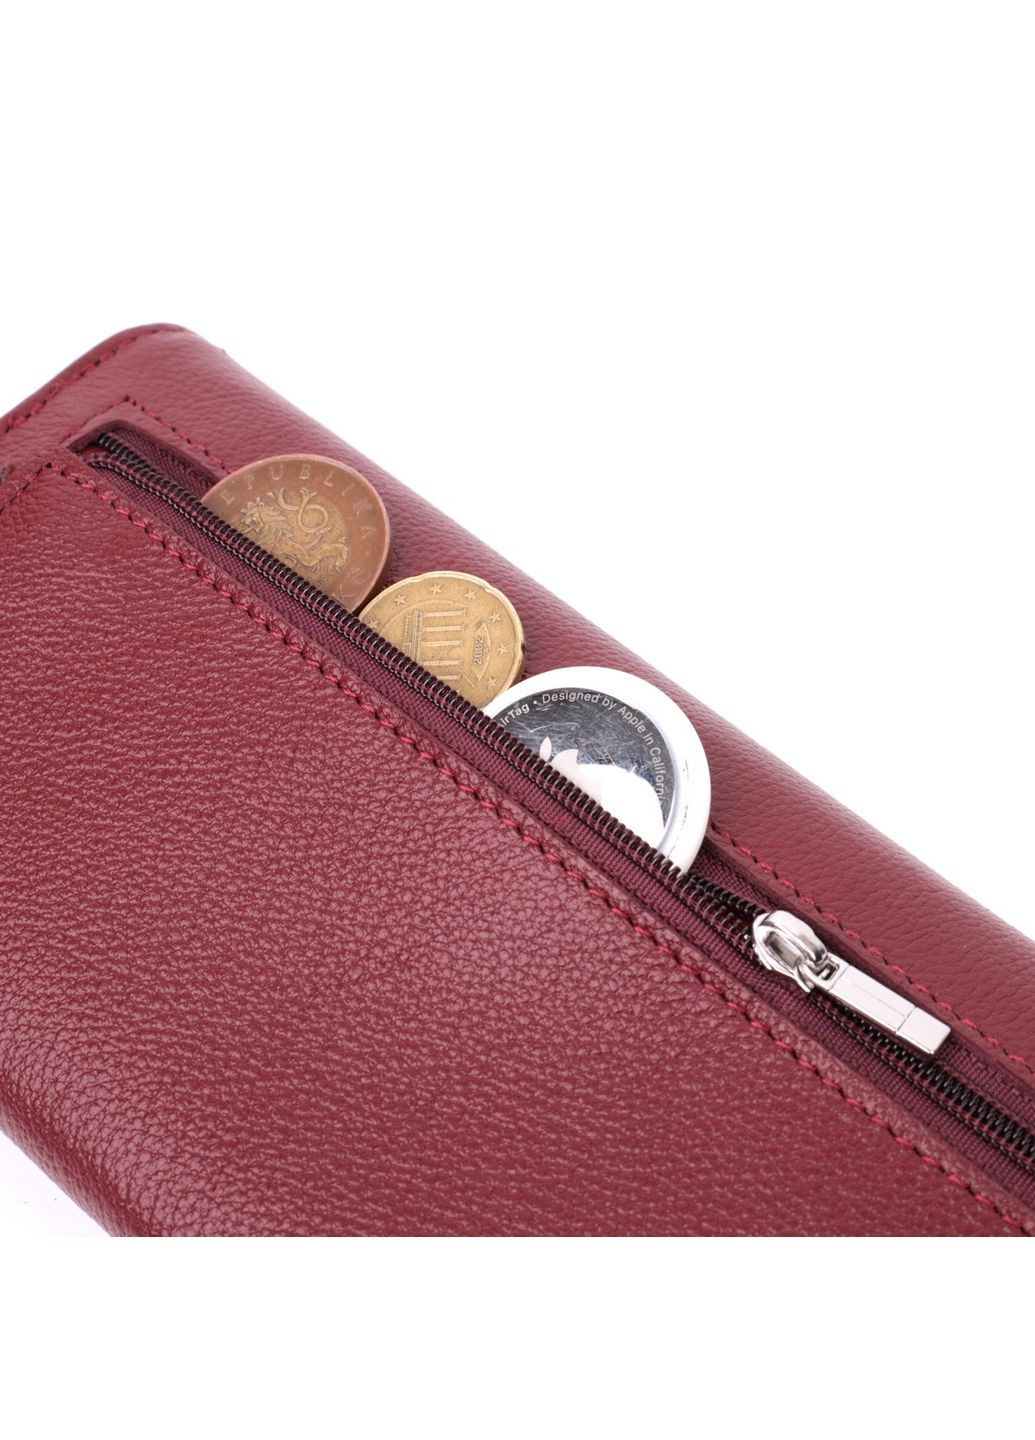 Кожаный женский кошелек st leather (288136478)